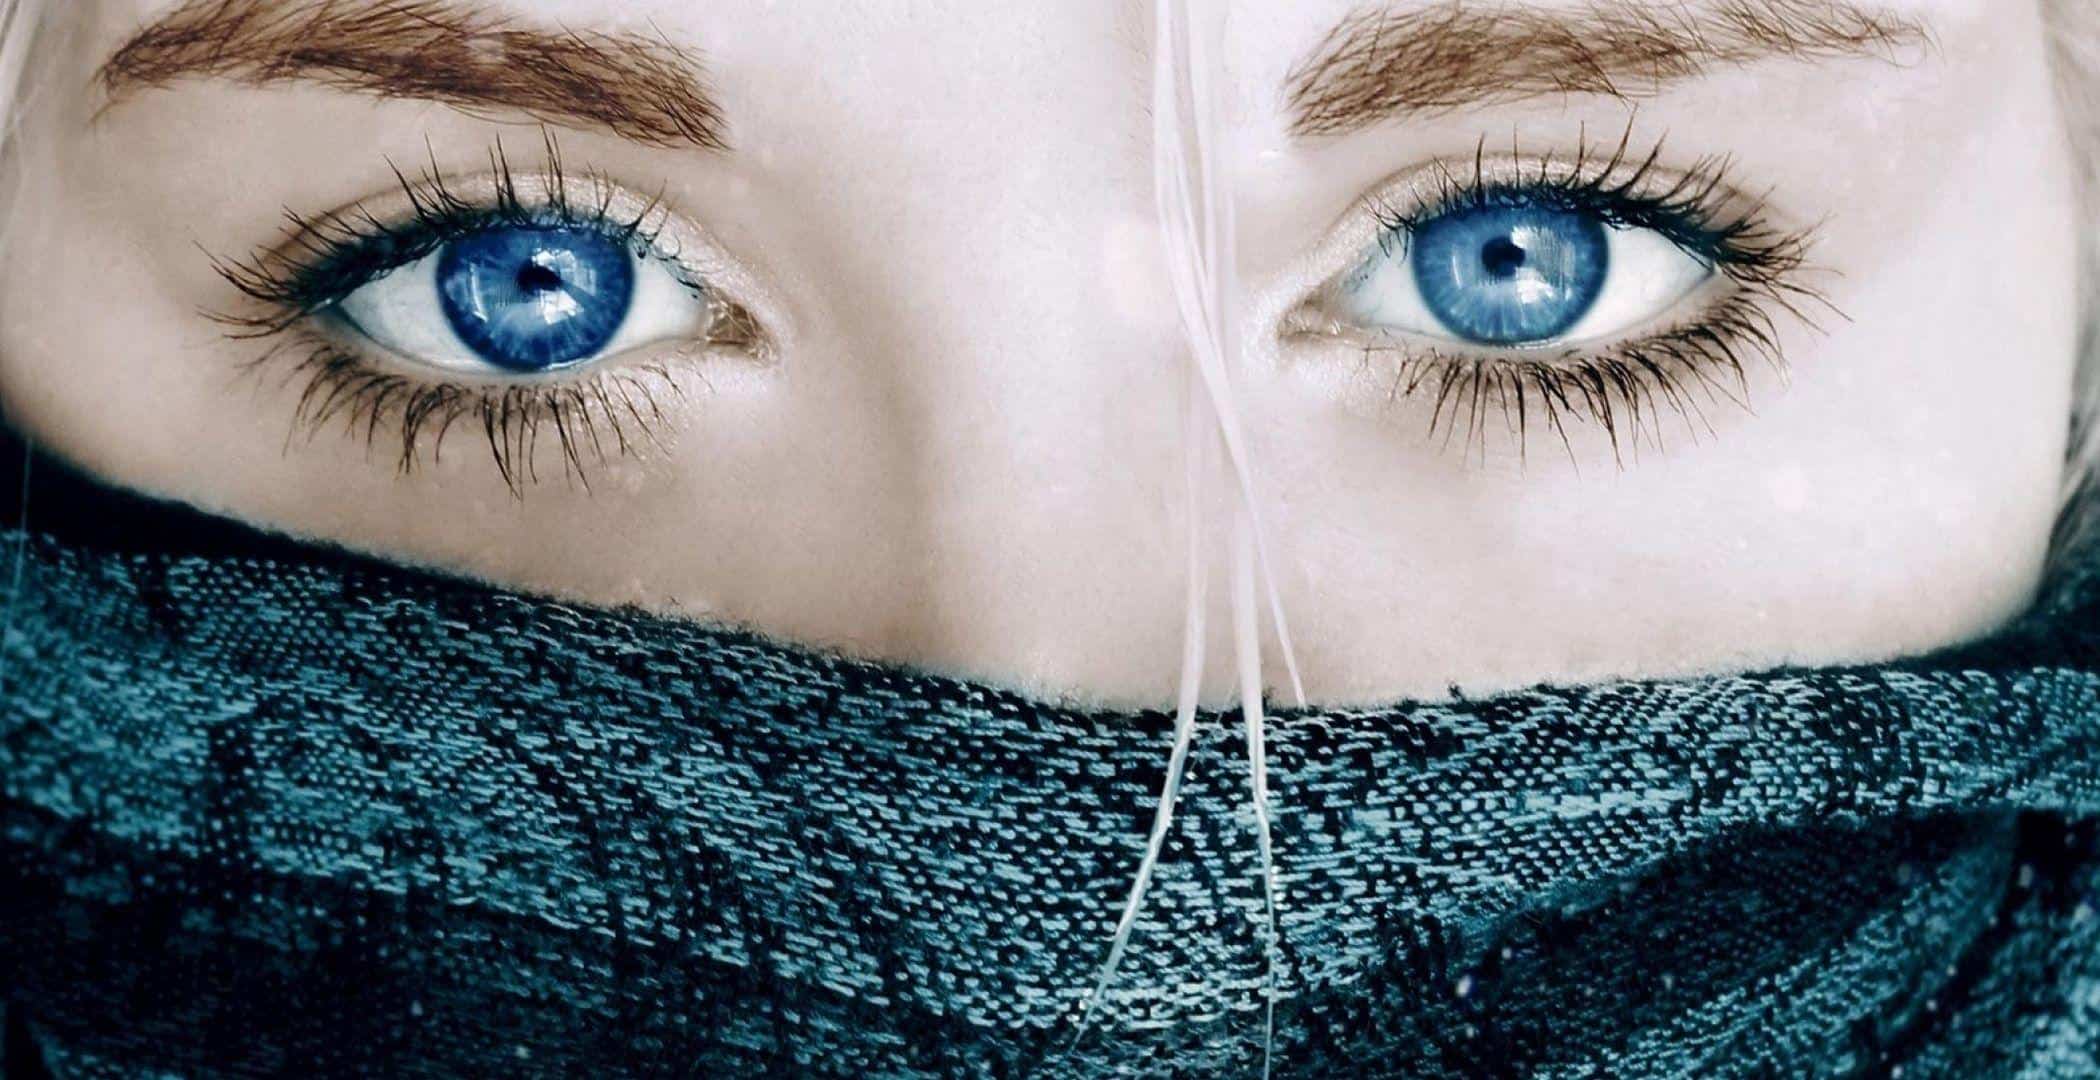 Eye Girls DP for Instagram